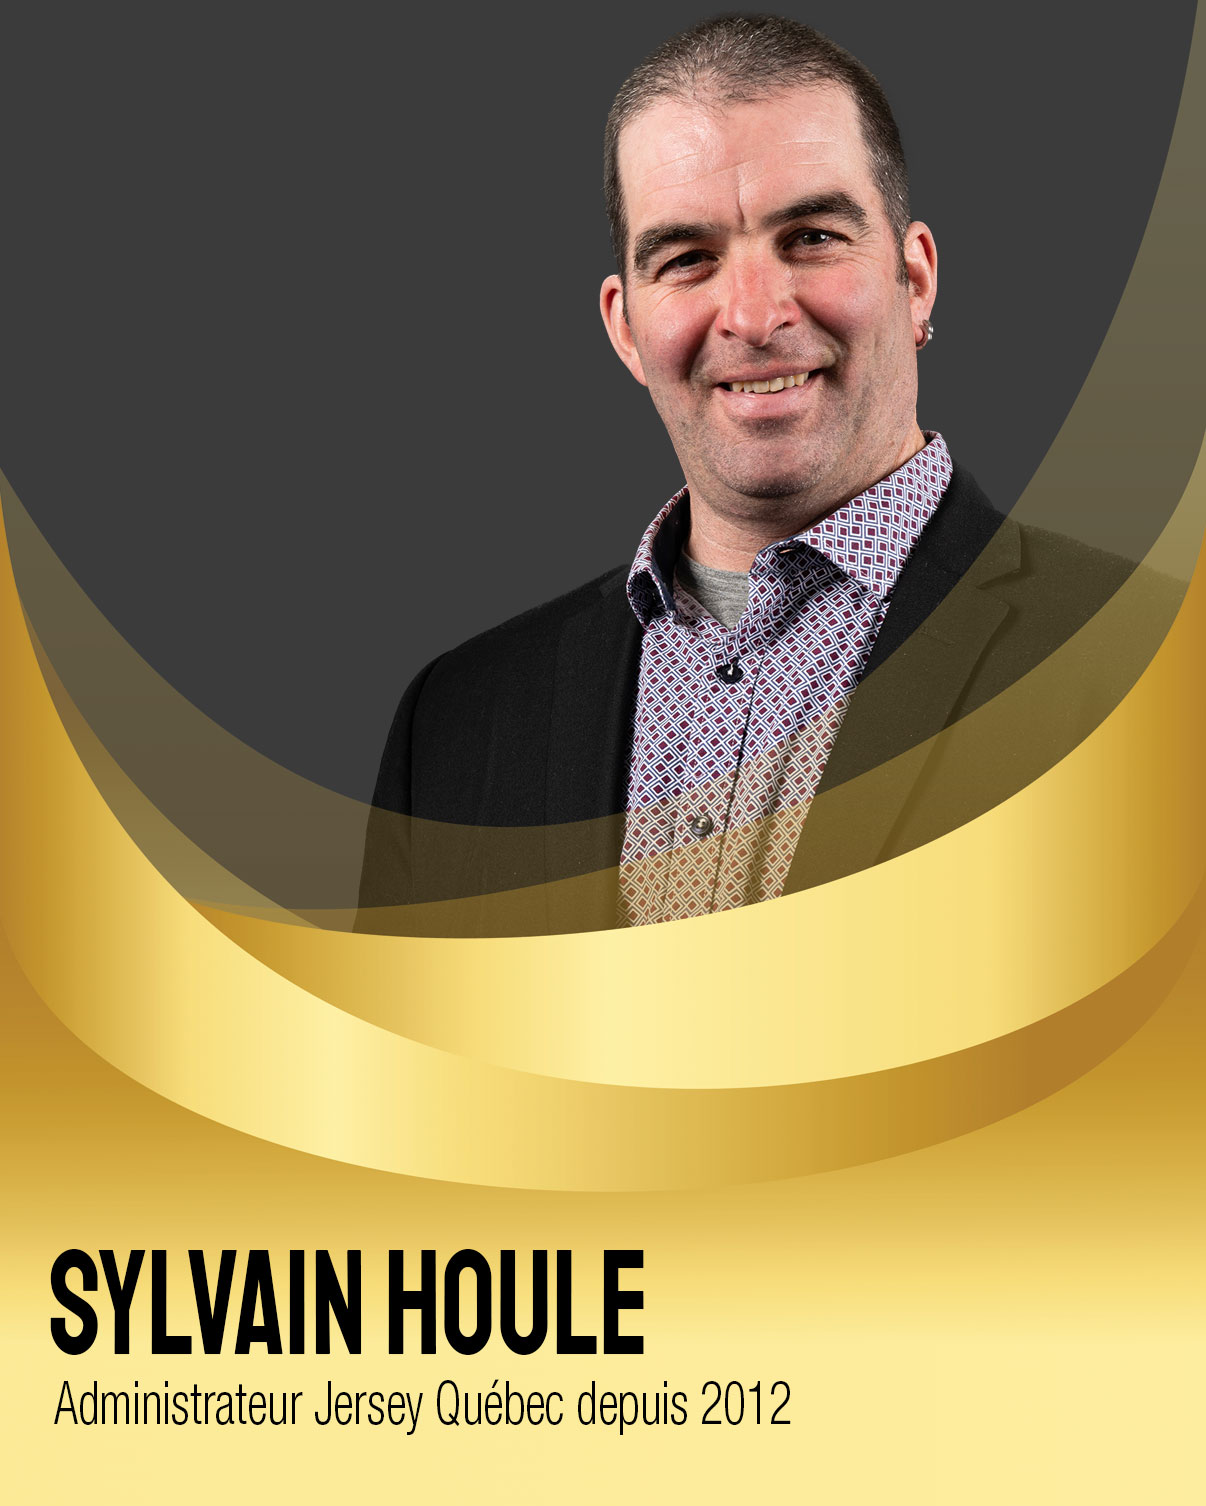 Sylvain Houle